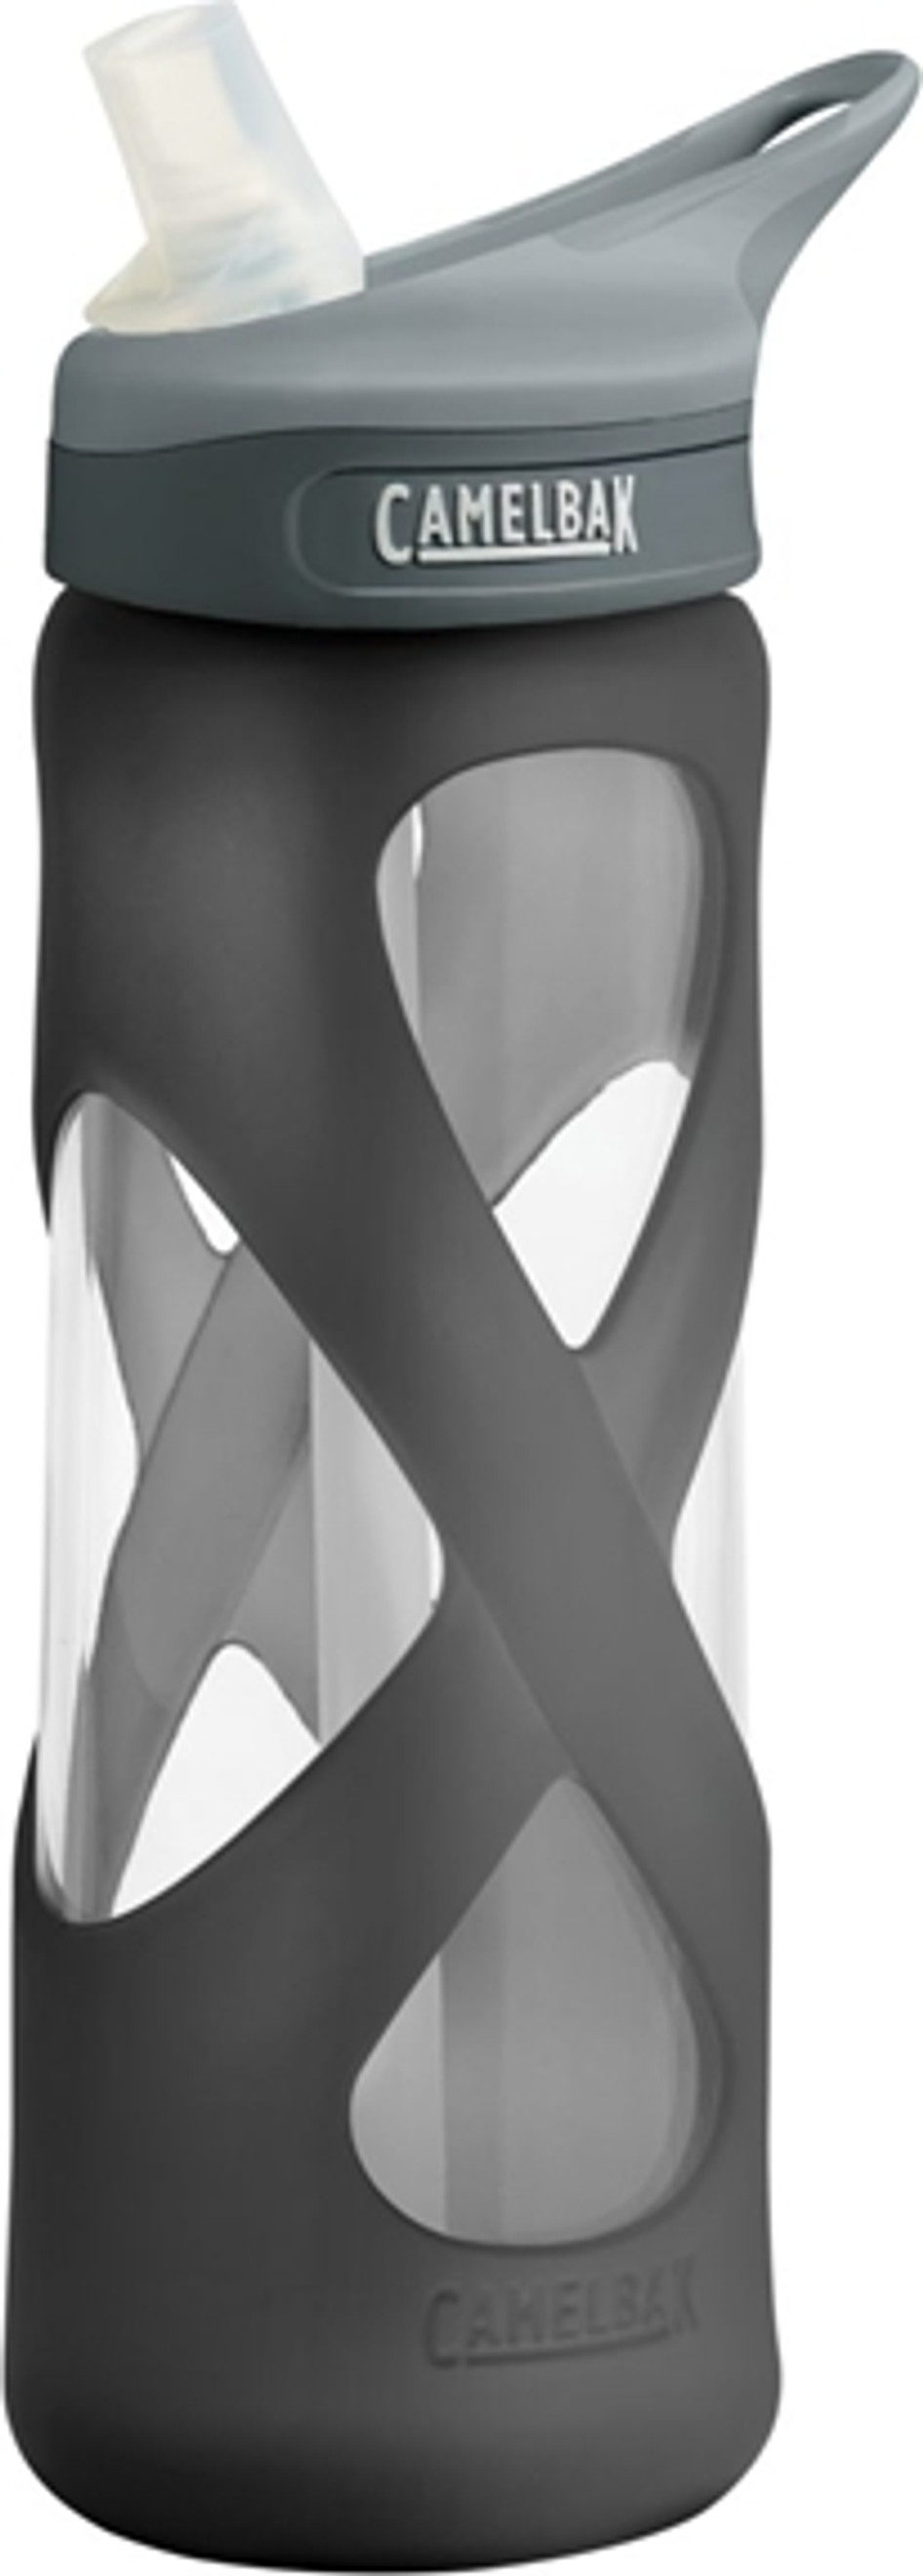 Camelbak eddy Glass Bottle 700ml - Charcoal